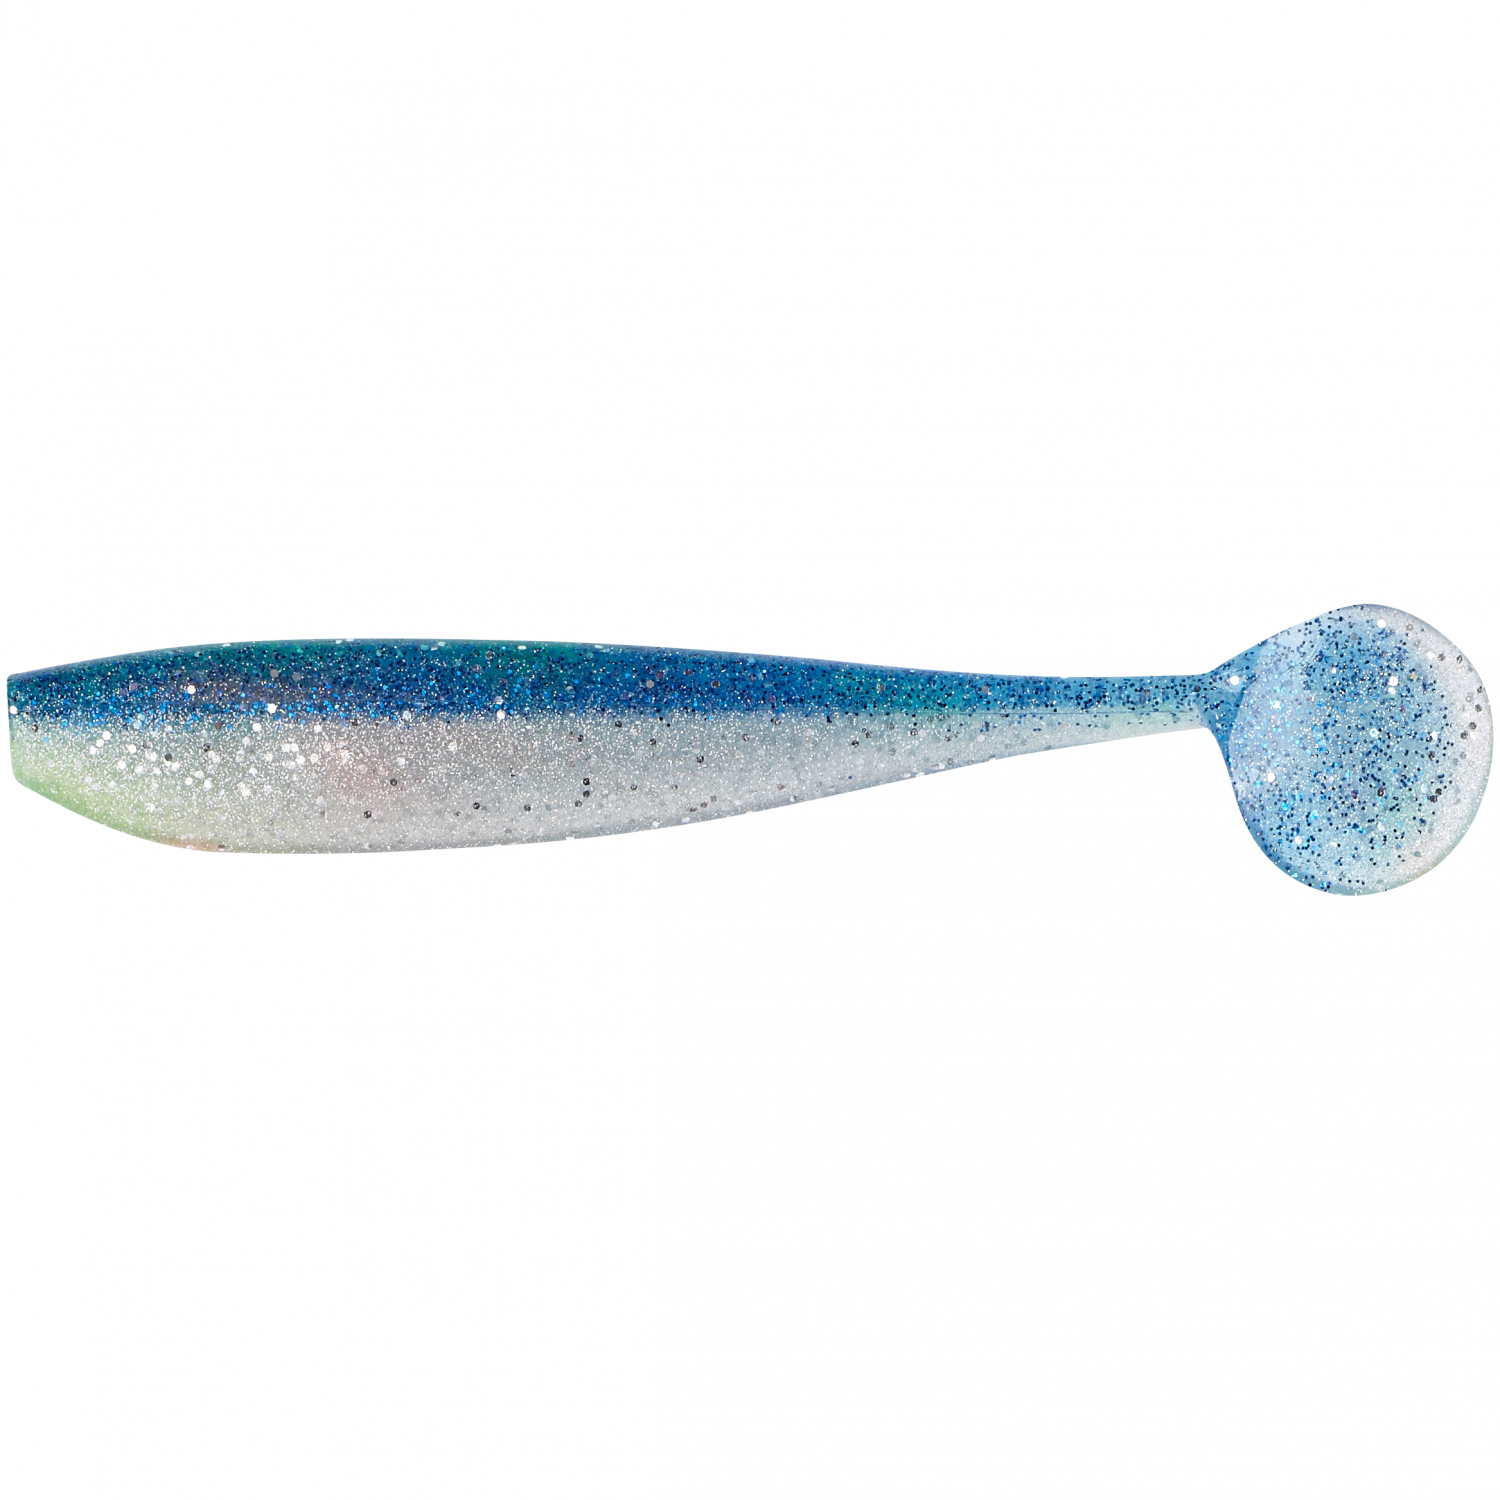 Shirasu Soft Bait Set Cod (blue-glitter) 